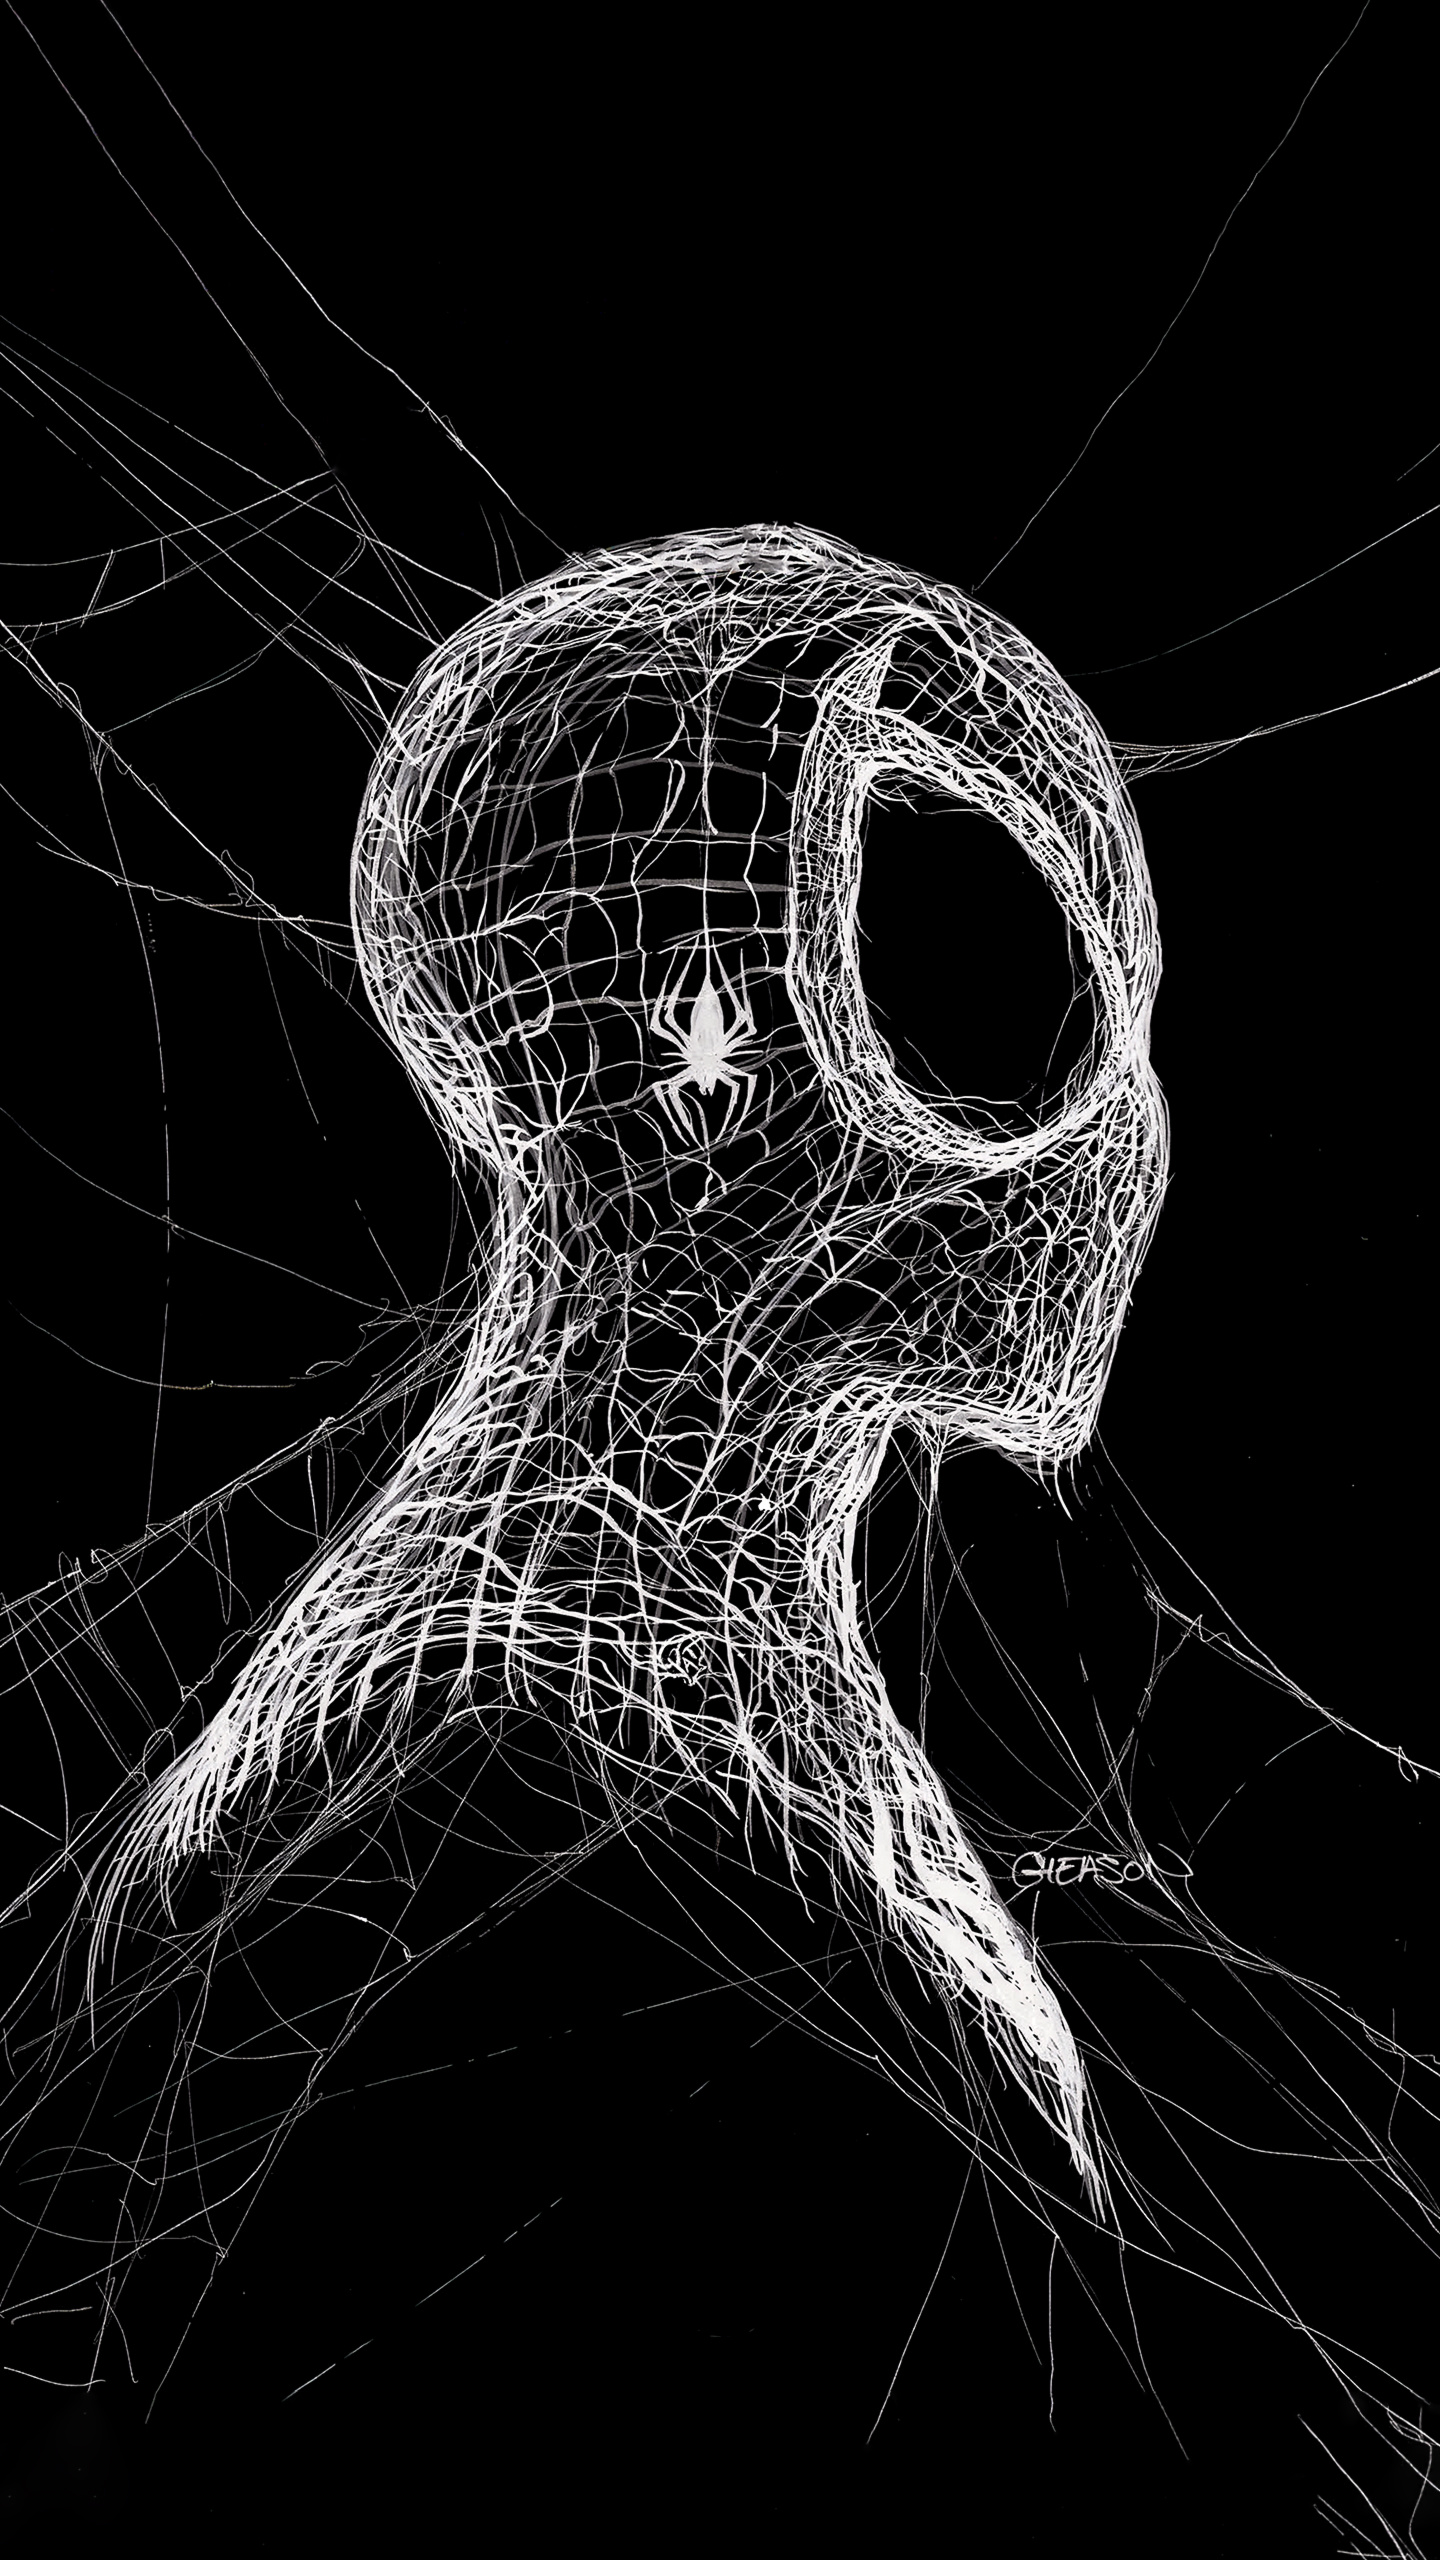 创意蜘蛛网构成的蜘蛛侠头像手机壁纸